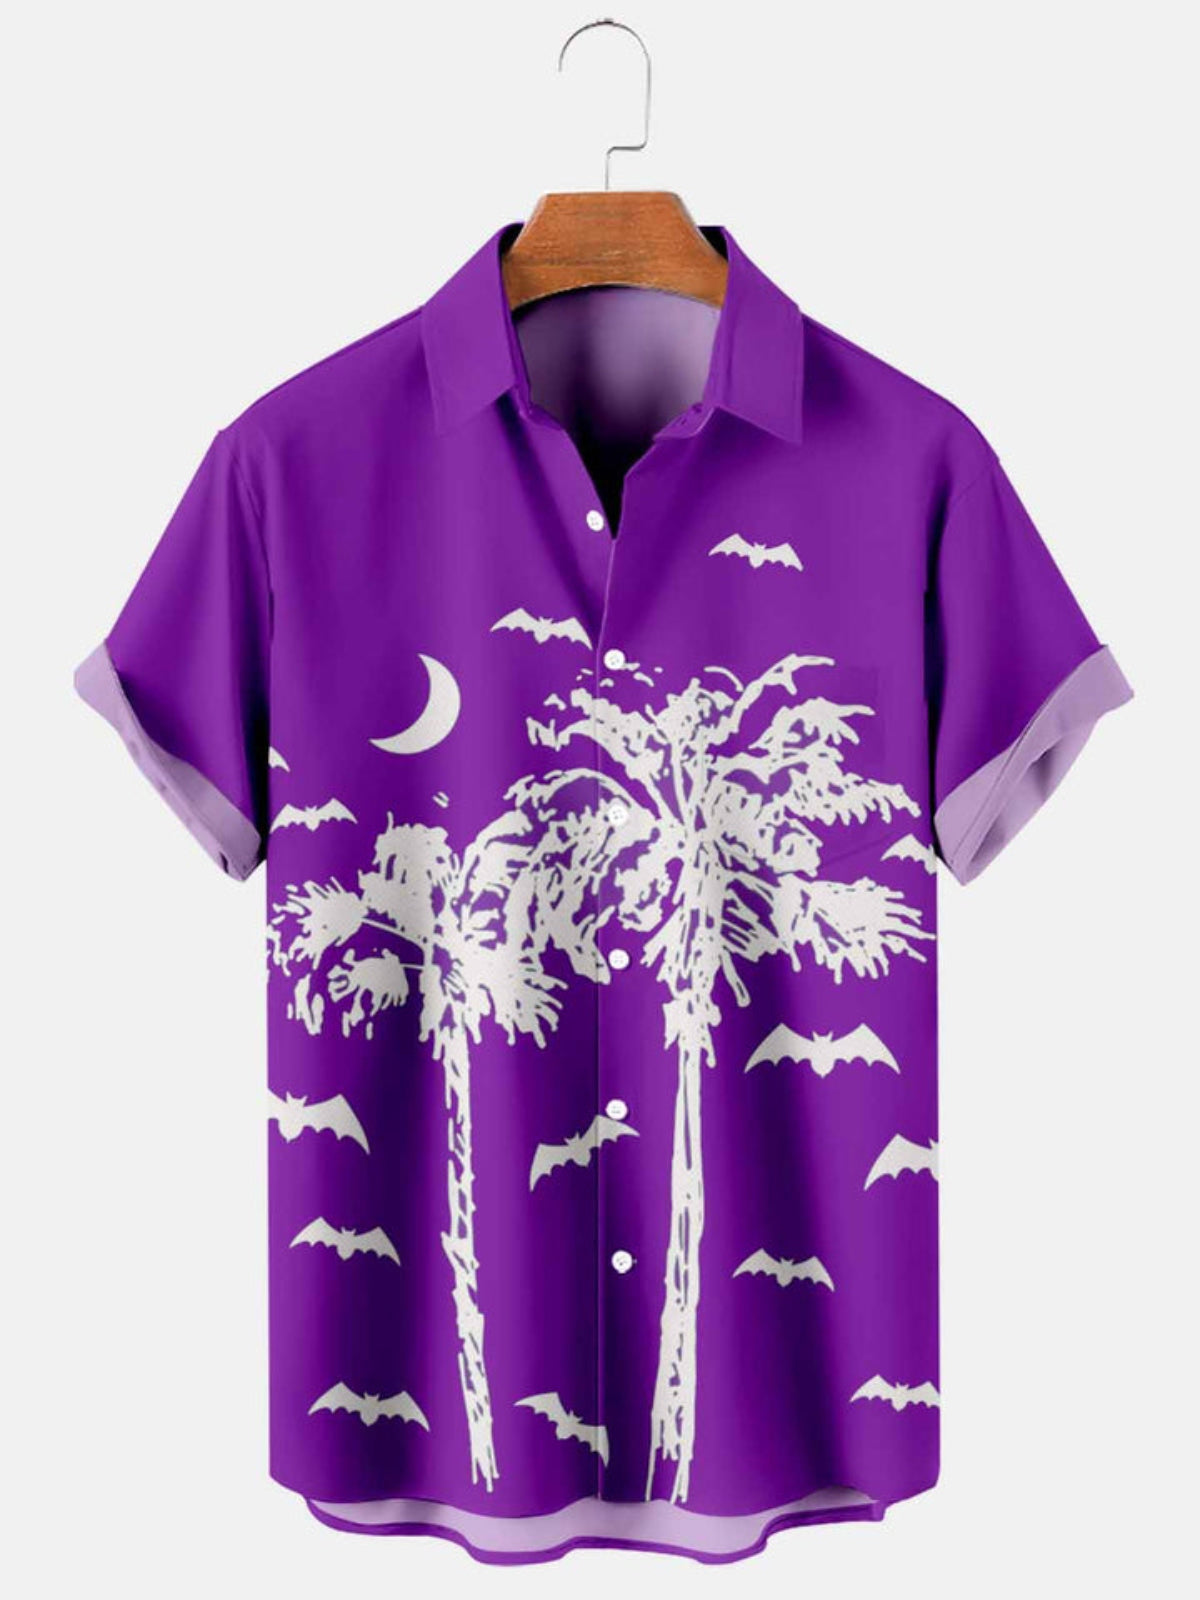 Palm Tree Printed Shirt